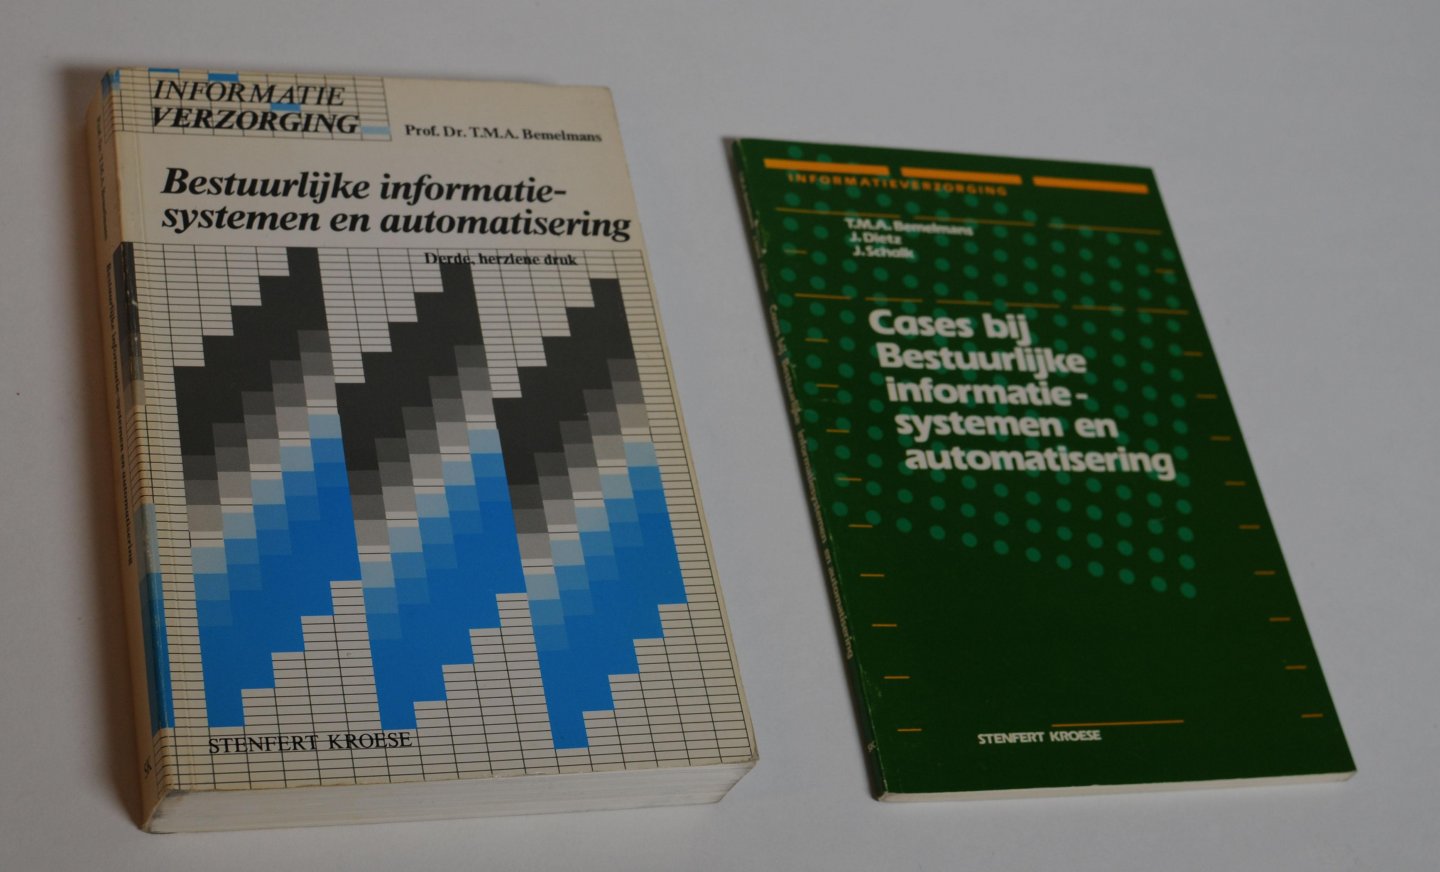 Bemelmans, Prof. dr. T.M.A. - Bestuurlijke informatiesystemen en automatisering